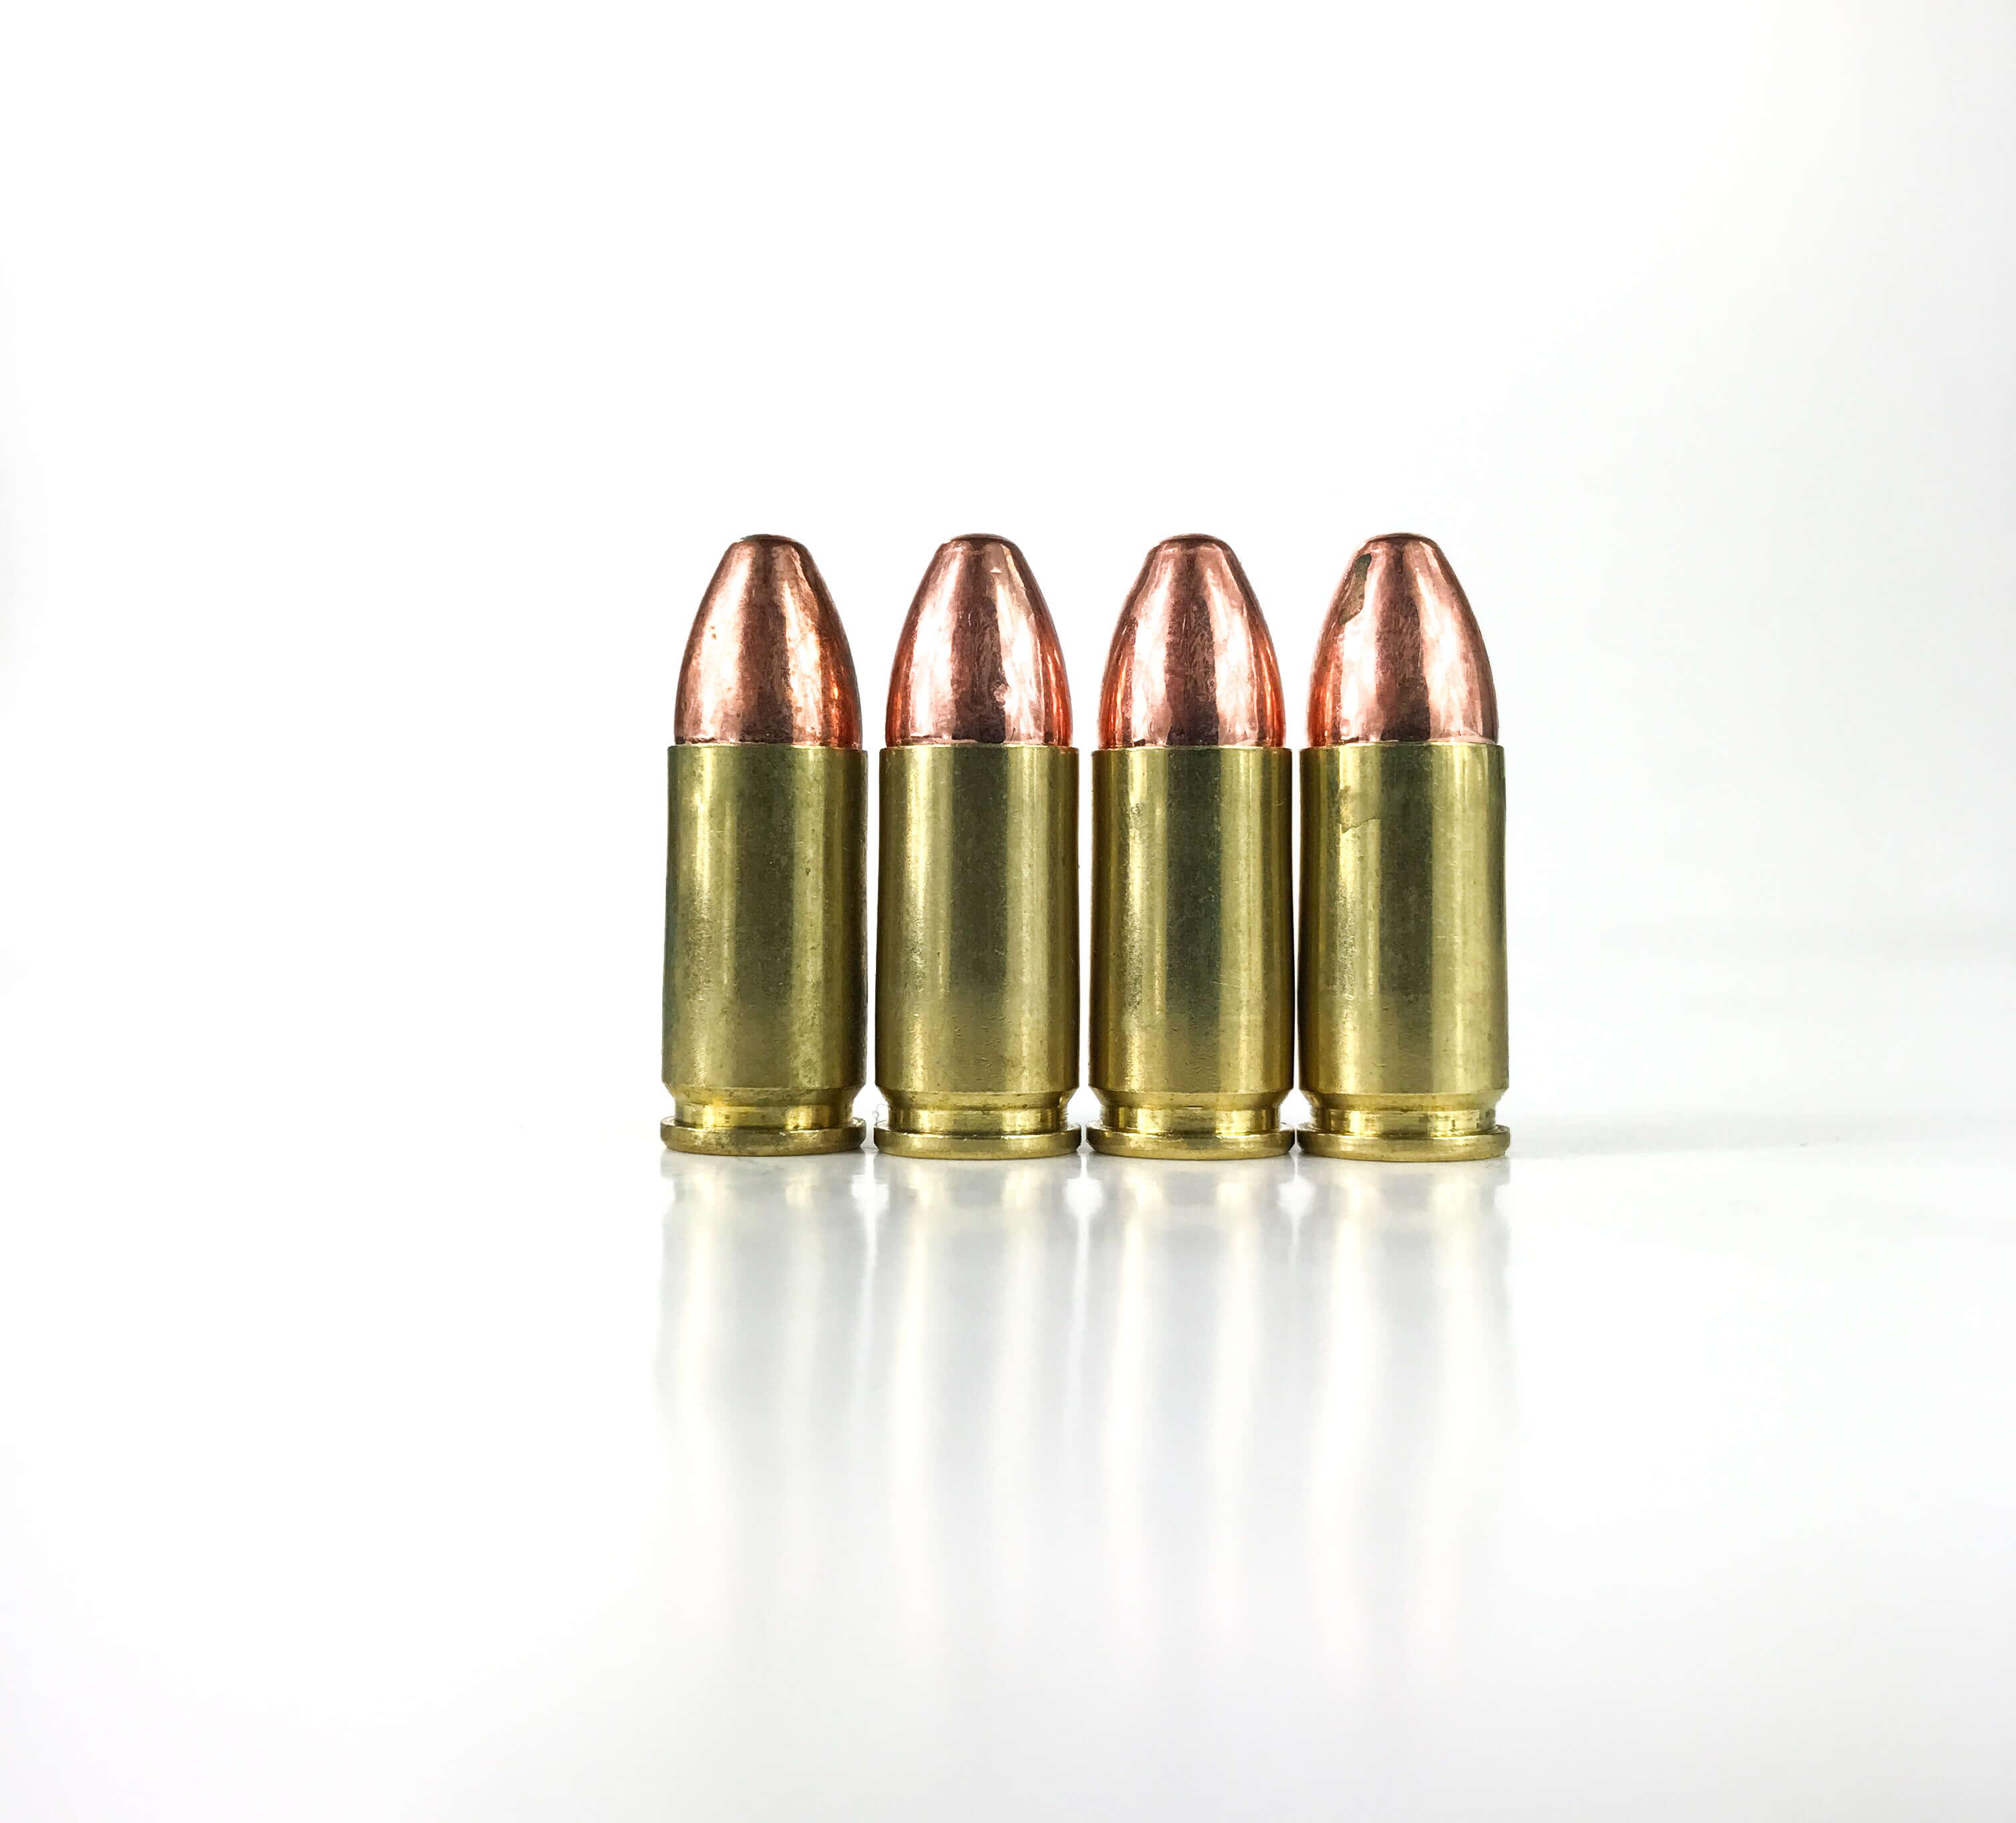 Rifle Ammunition Inert - 9mm Dummy rounds image 1